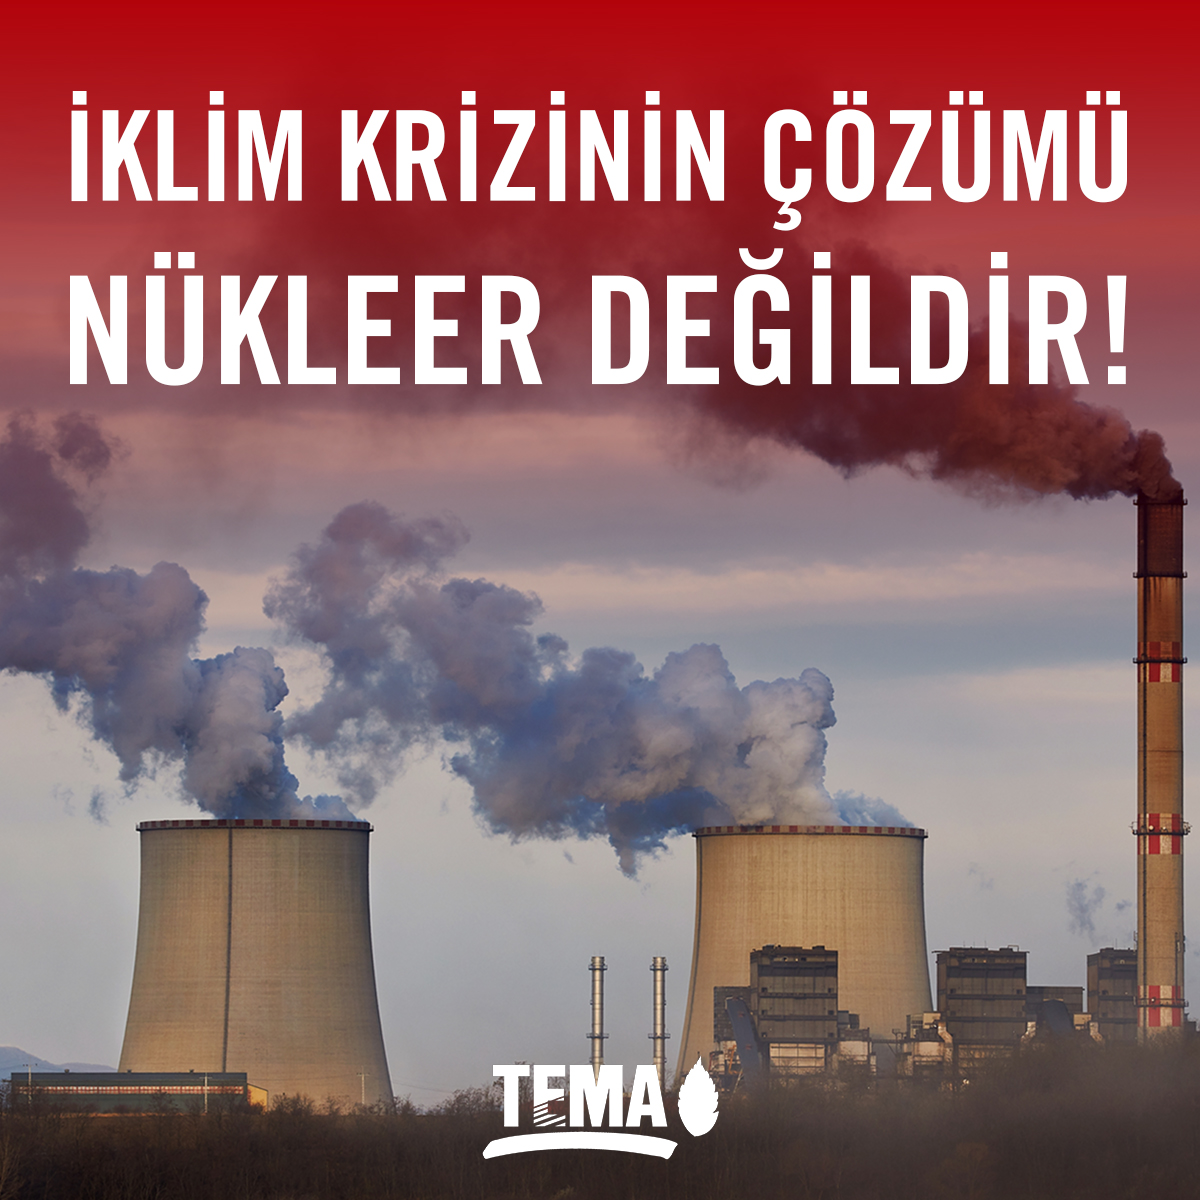 Dünyanın ilk Nükleer Enerji Zirvesi 21 Mart’ta Brüksel’de toplandı. Türkiye’nin de arasında bulunduğu 32 ülke, düşük emisyonlu bir enerji yöntemi olduğu iddiası ile nükleer enerjiye yatırımların artırılacağını vurgulayan Nükleer Enerji Deklarasyonu’na imza attı. Ancak nükleer…